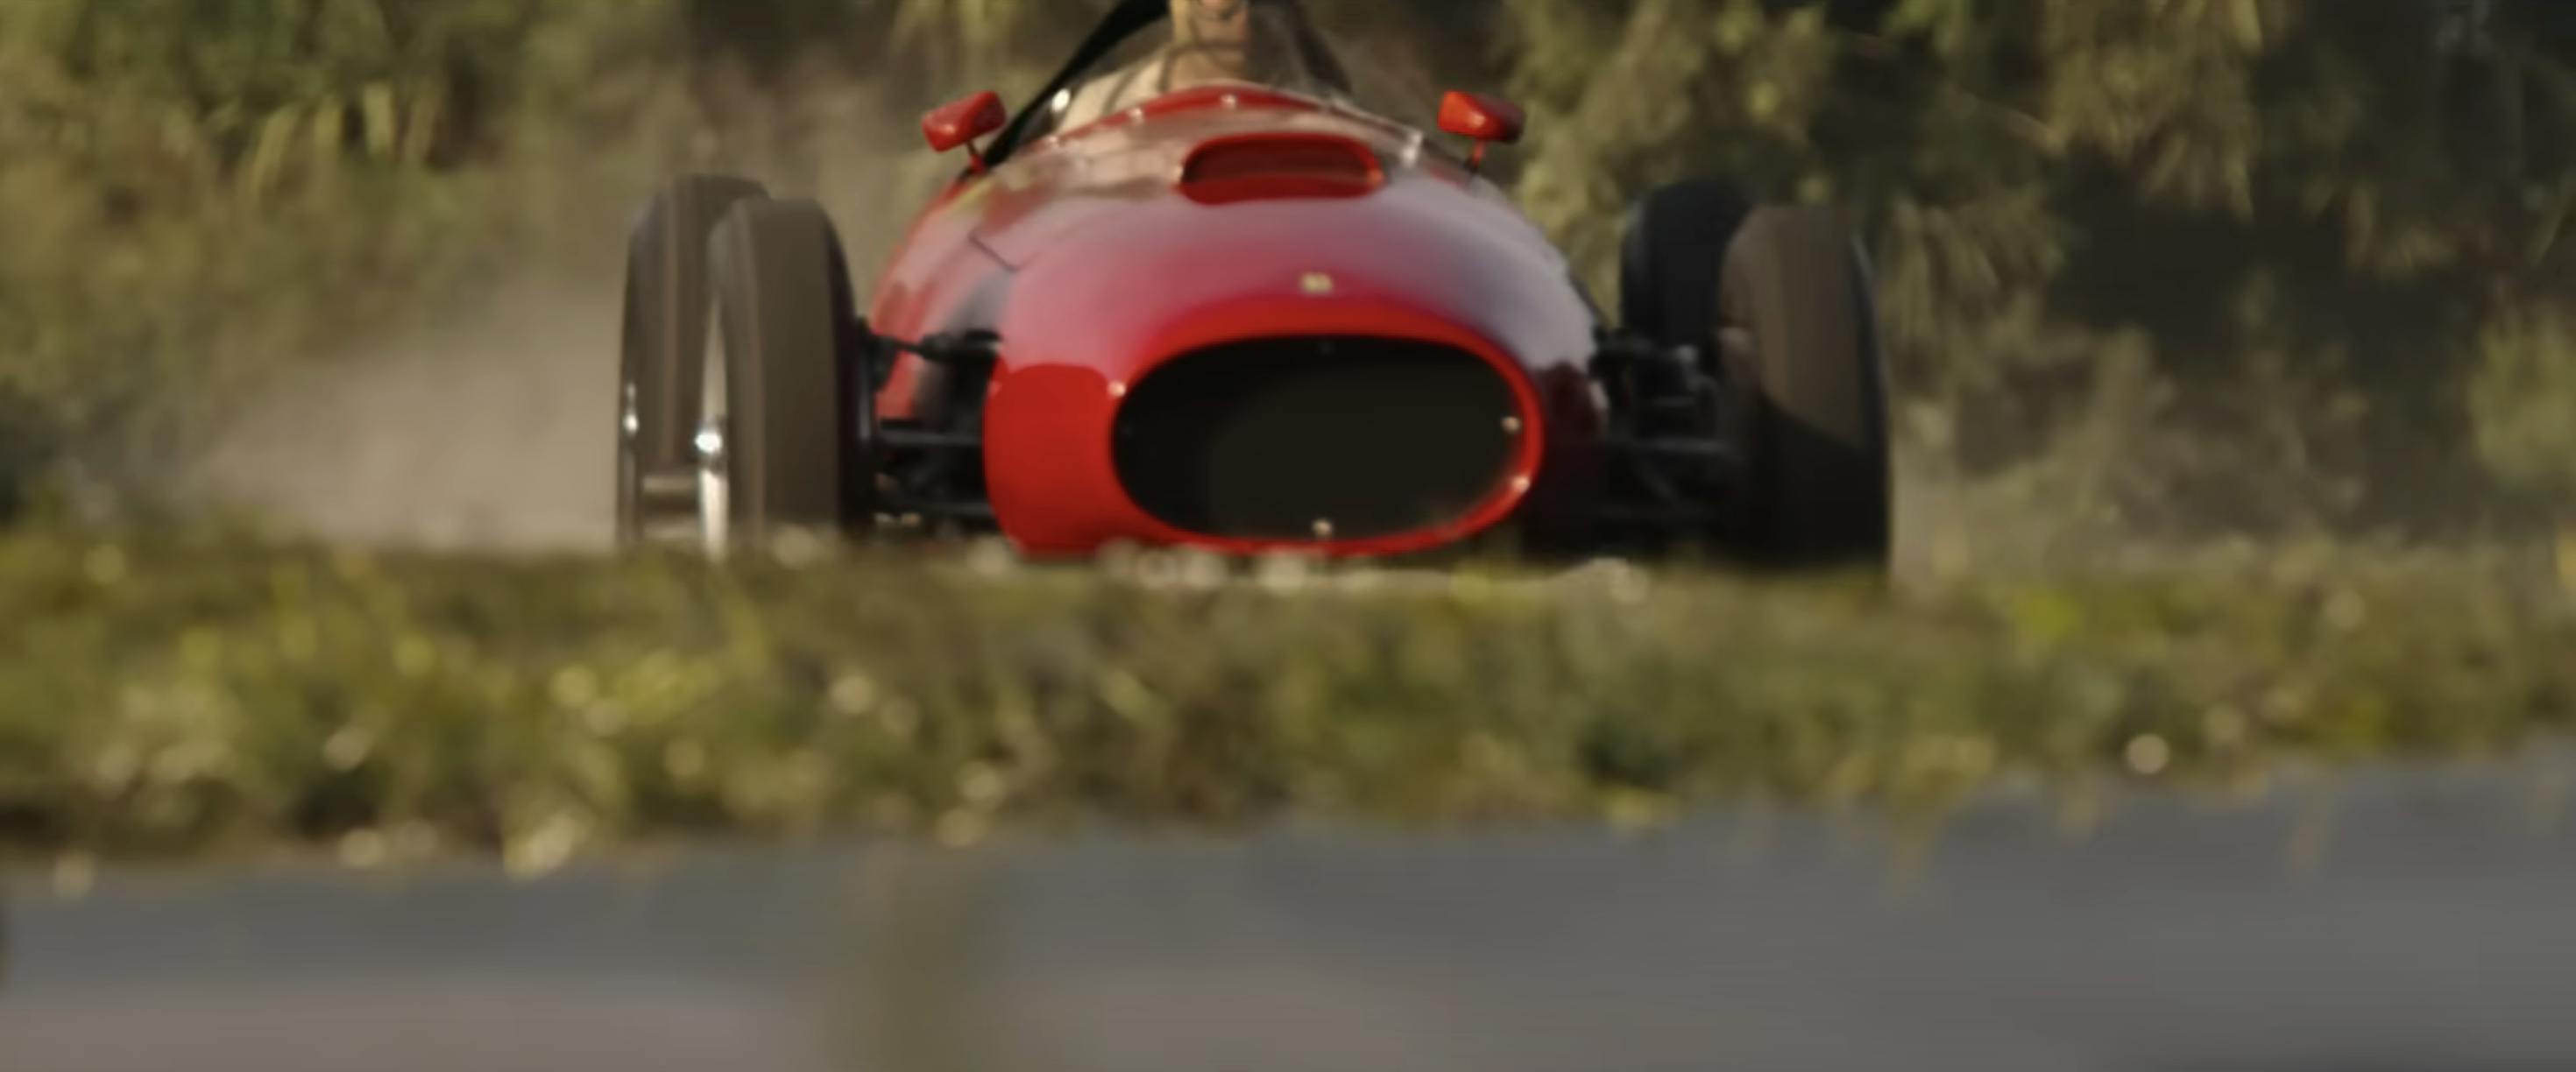 Ferrari film racing action still front